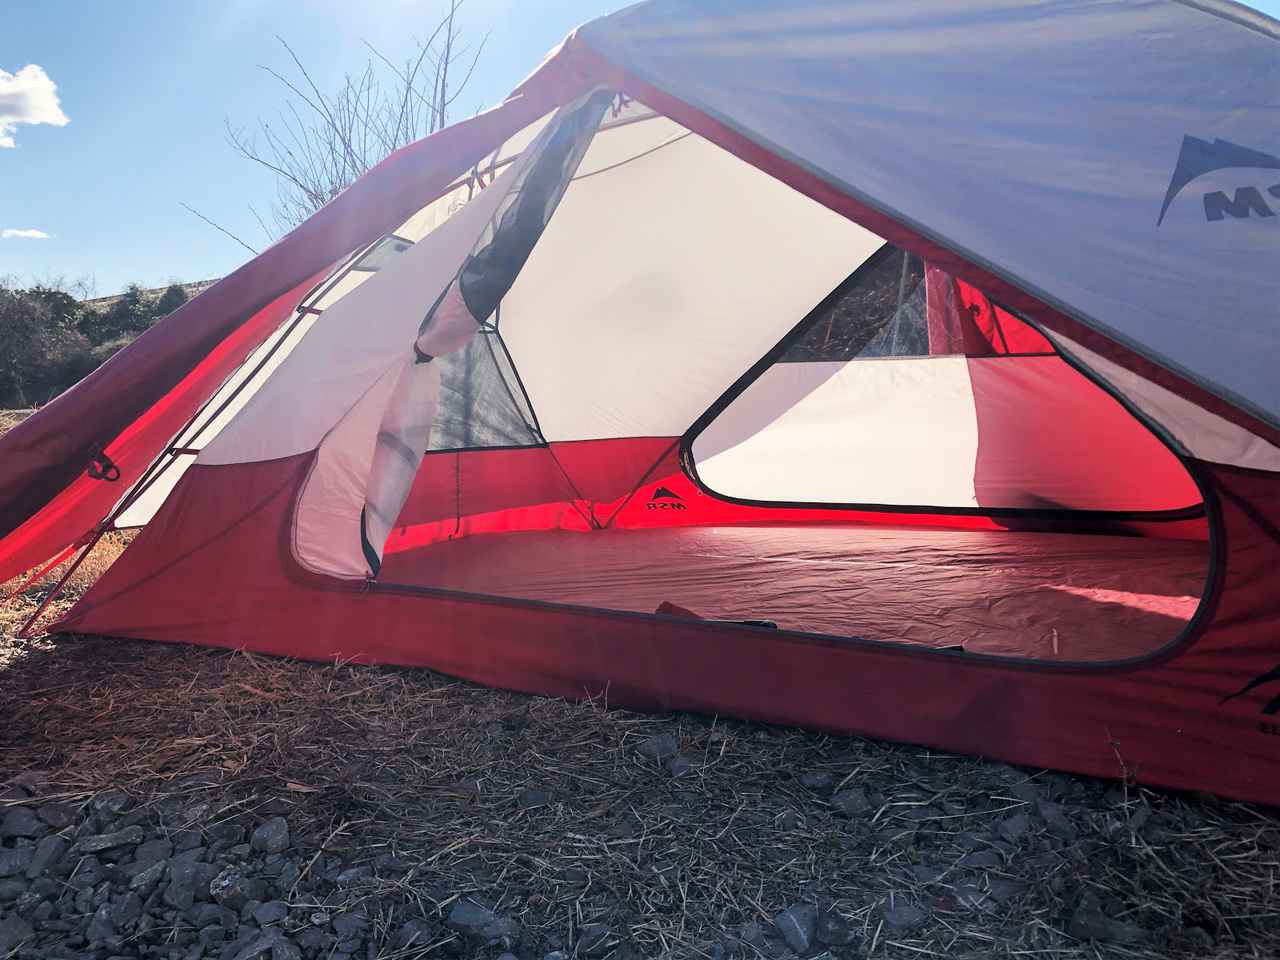 msr エリクサー3 テント 美品 ファミリーキャンプ ソロキャンプにも